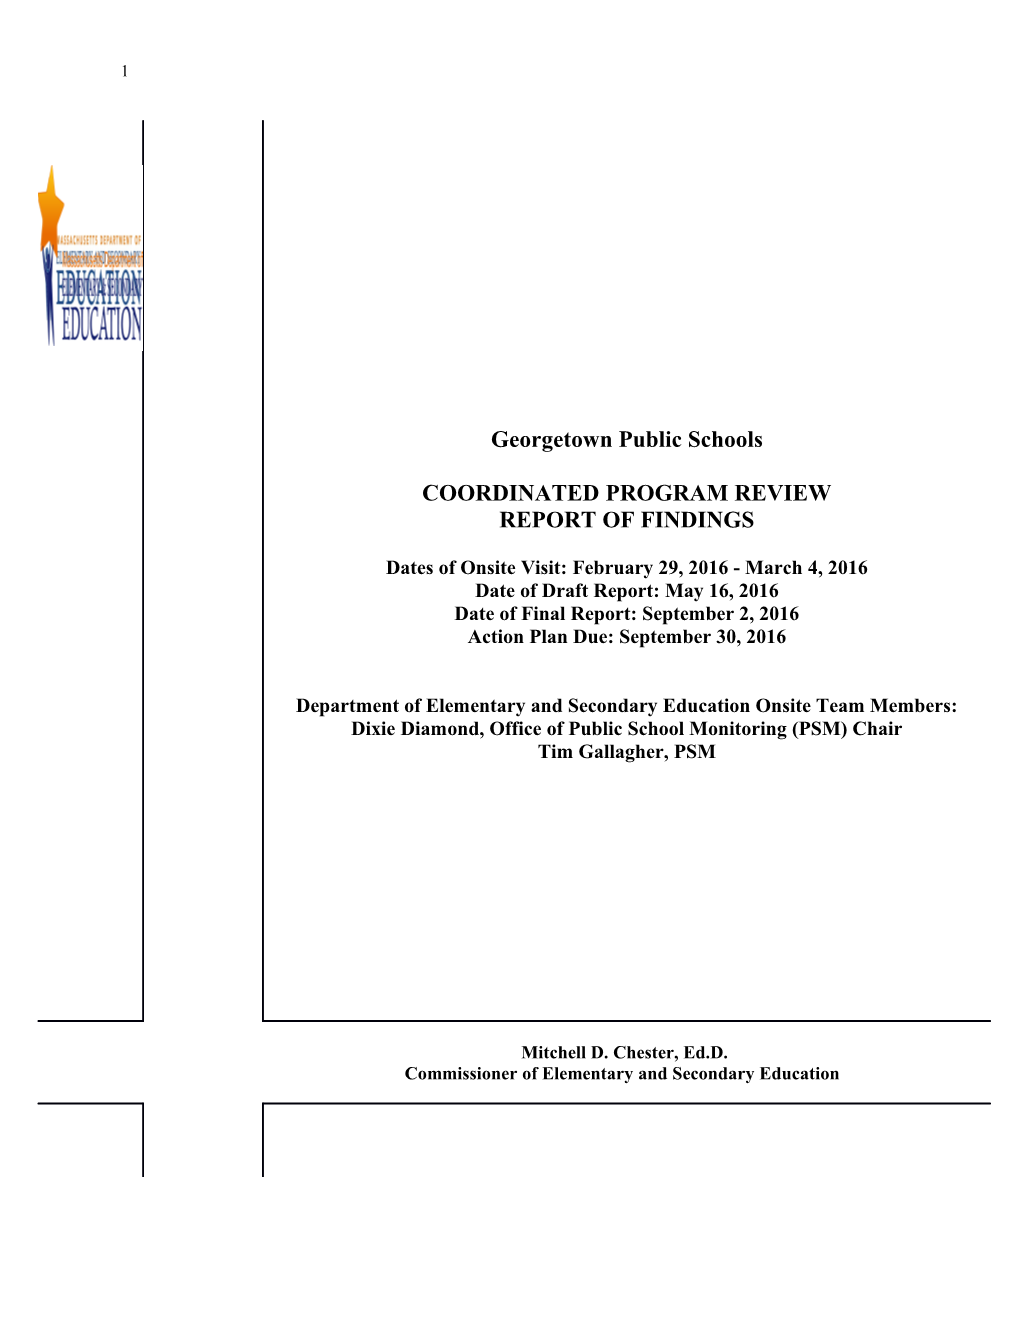 Georgetown Public Schools CPR Final Report 2016